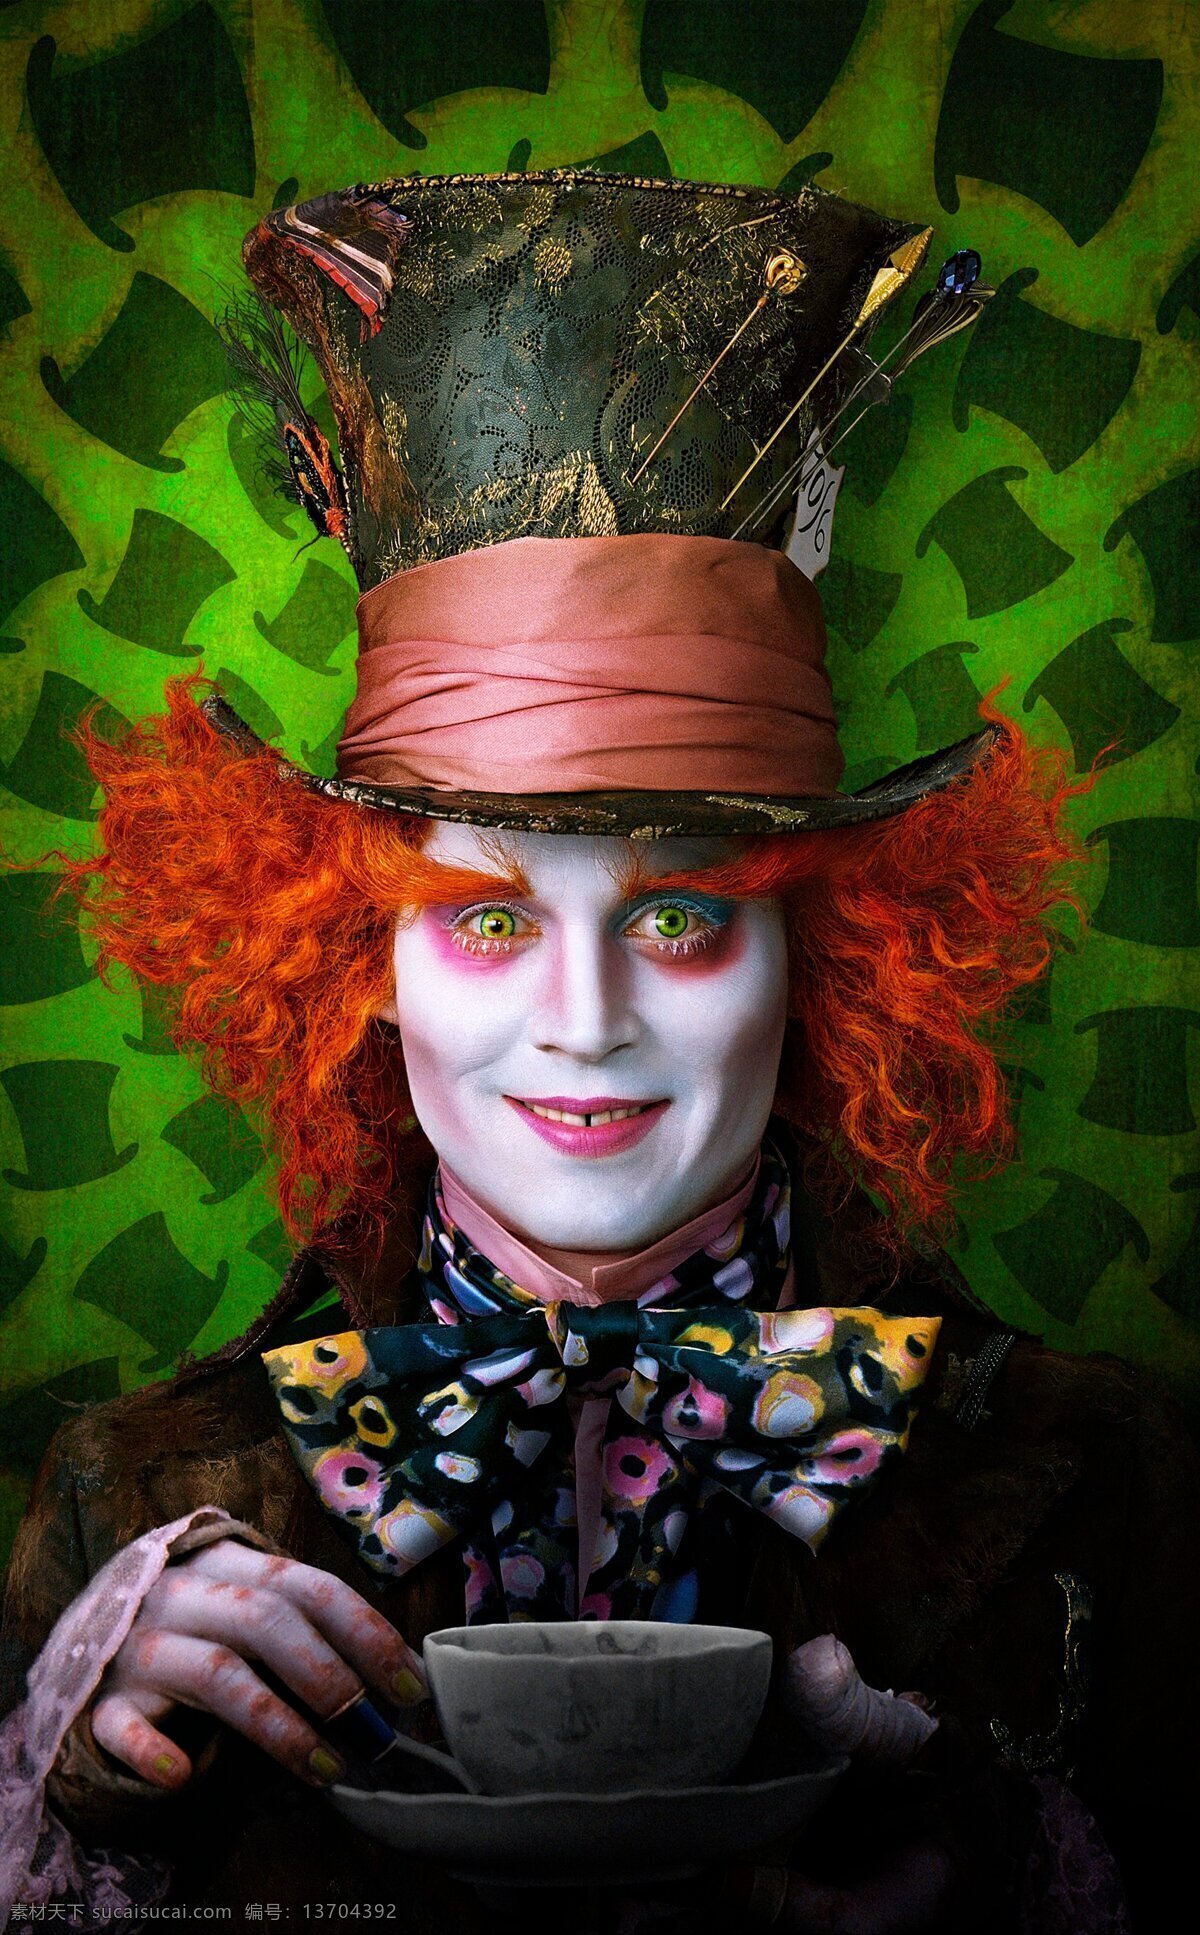 约翰尼德普 小丑 明星 帽子先生 爱丽丝 梦游 仙境 影视娱乐 文化艺术